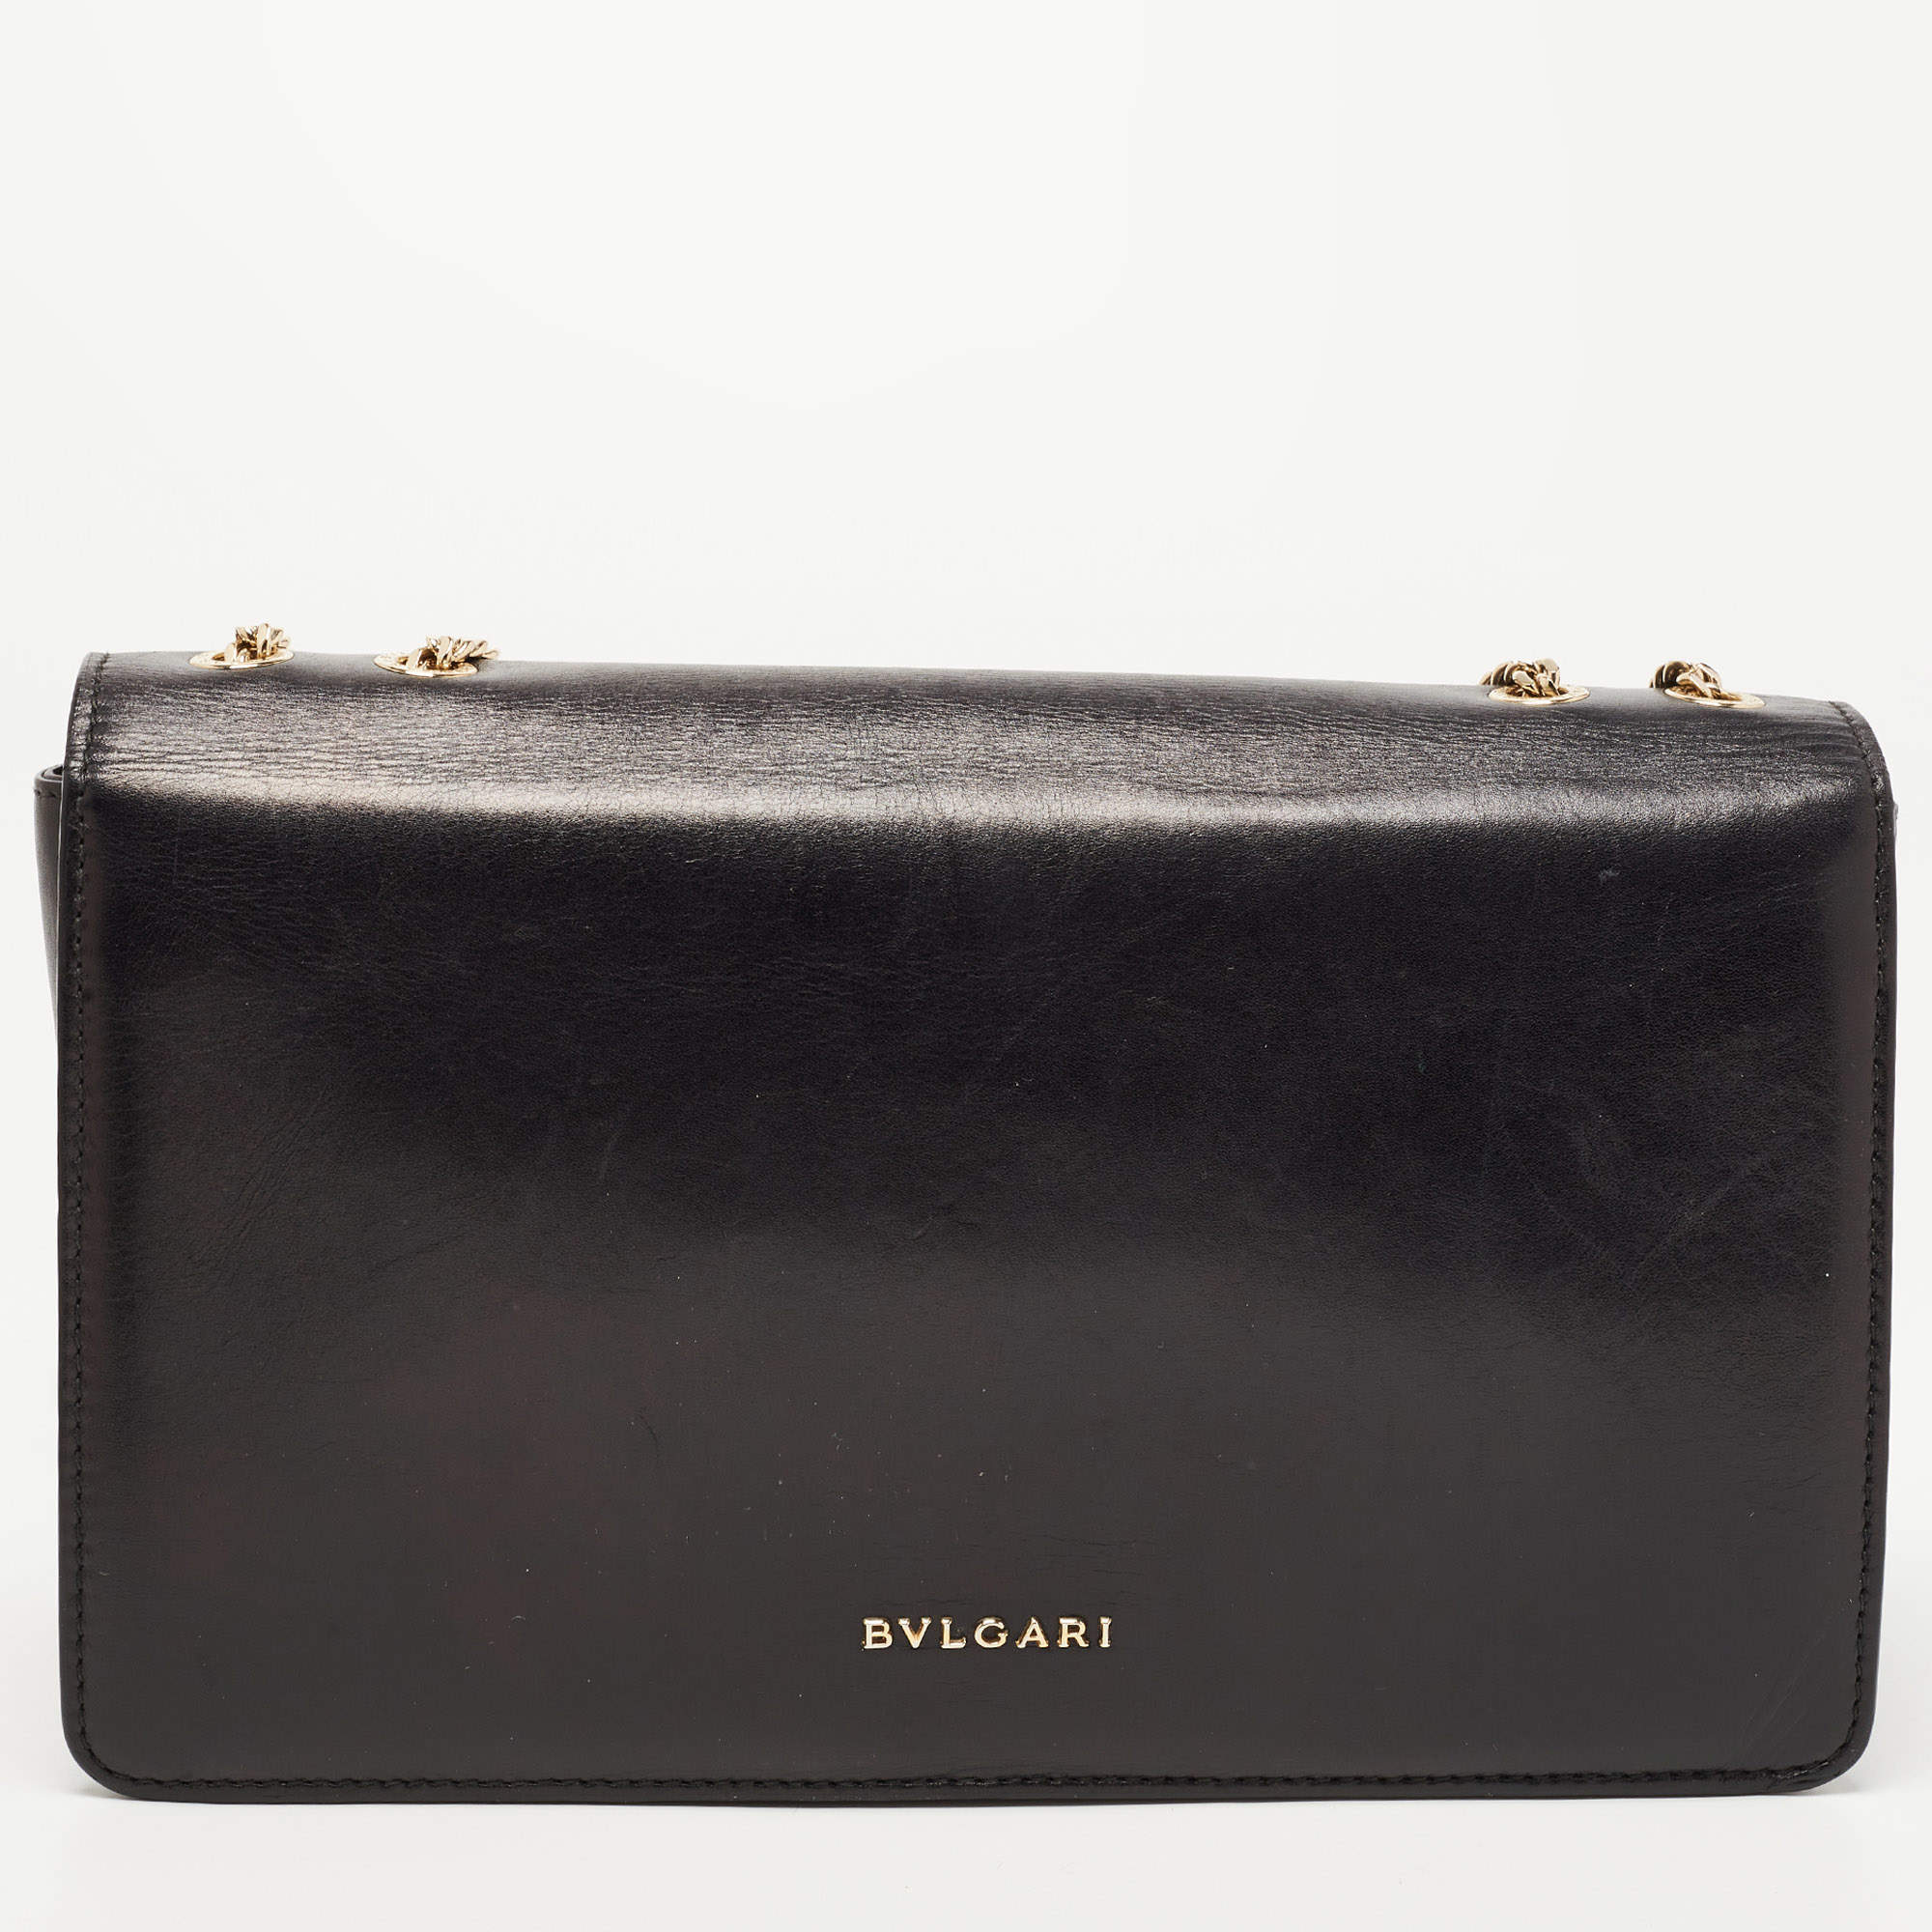 Bvlgari Black Leather and Perspex Flap Cover Shoulder Bag Bvlgari